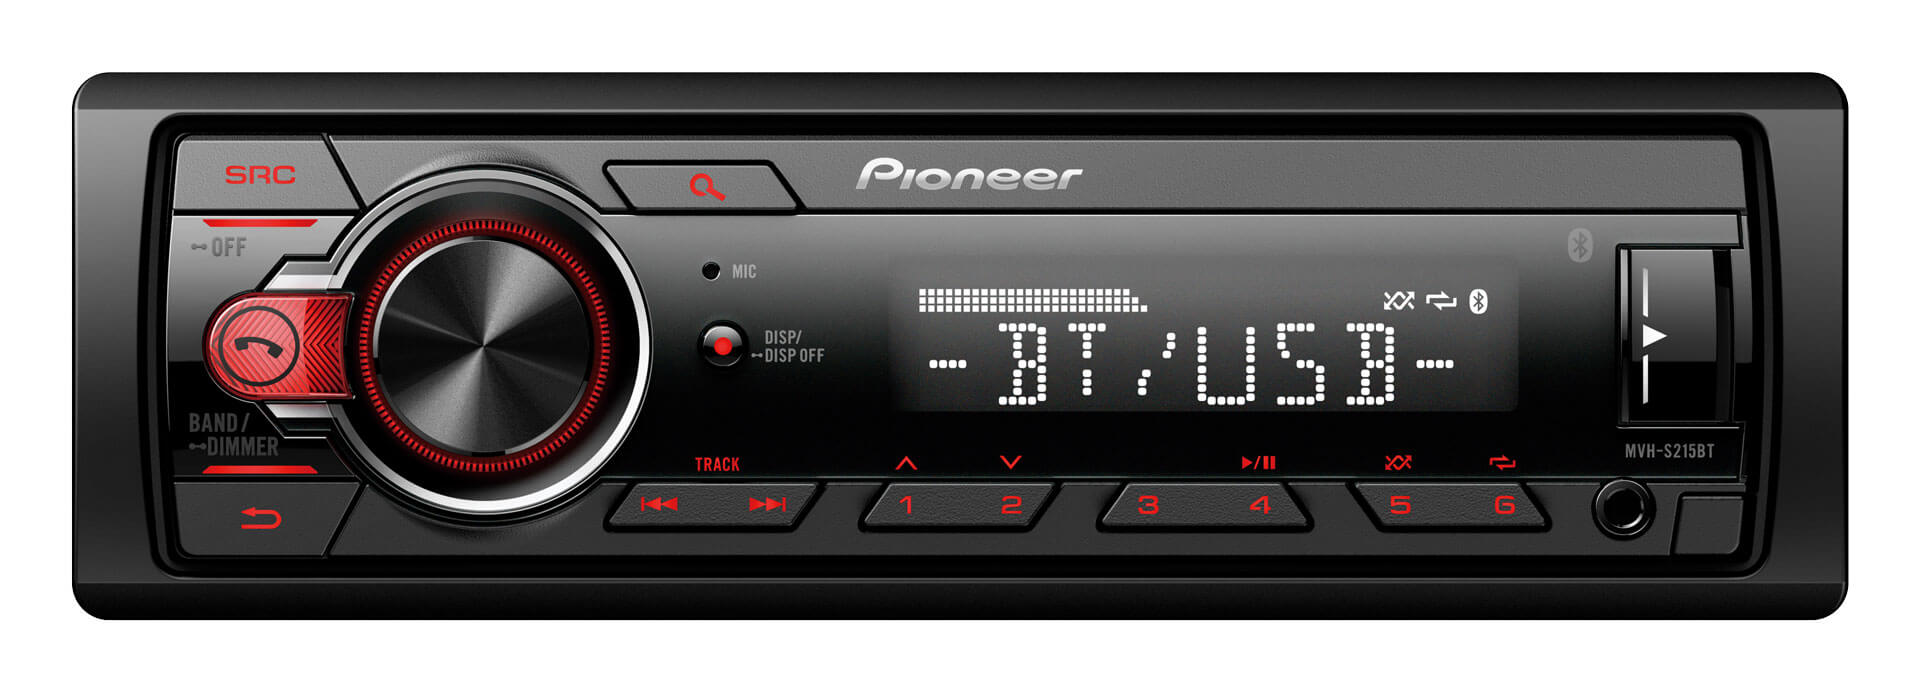 17907円 高級素材使用ブランド Pioneer MVH-S215BT ステレオ シングル DIN Bluetooth インダッシュ USB MP3 補助 AM FM Android スマートフォン 対応デジタルメディア カーステレオレシーバー ALPHASONIK イヤホン